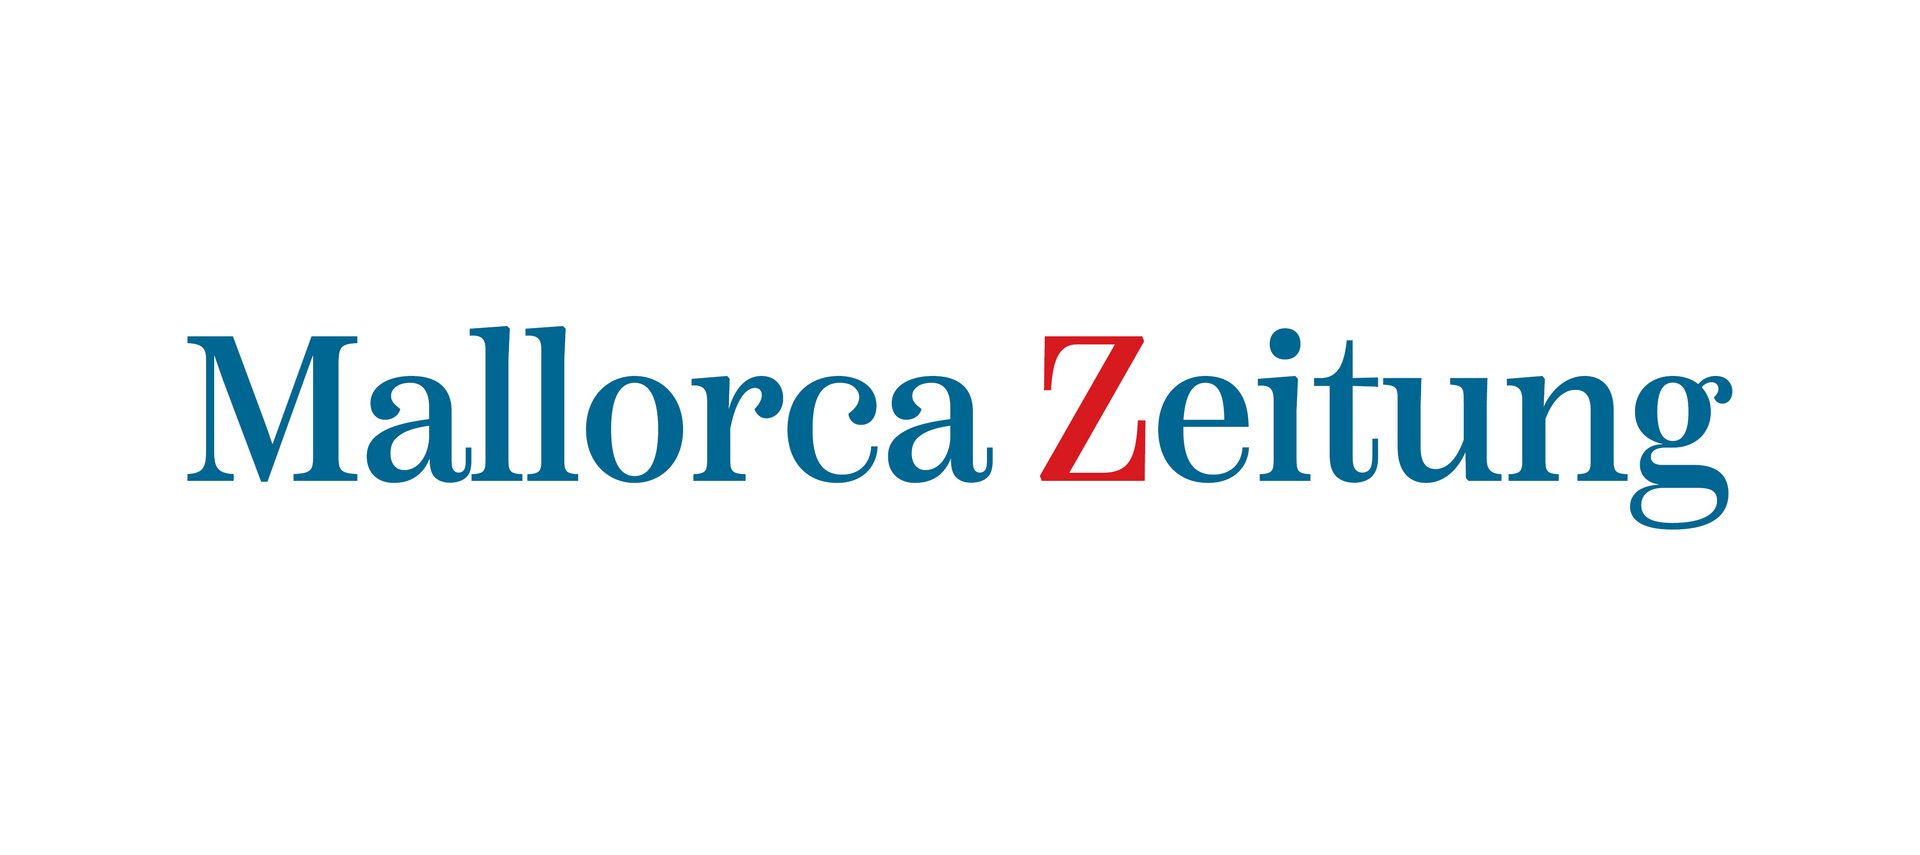 Mallorca Zeitung Logo